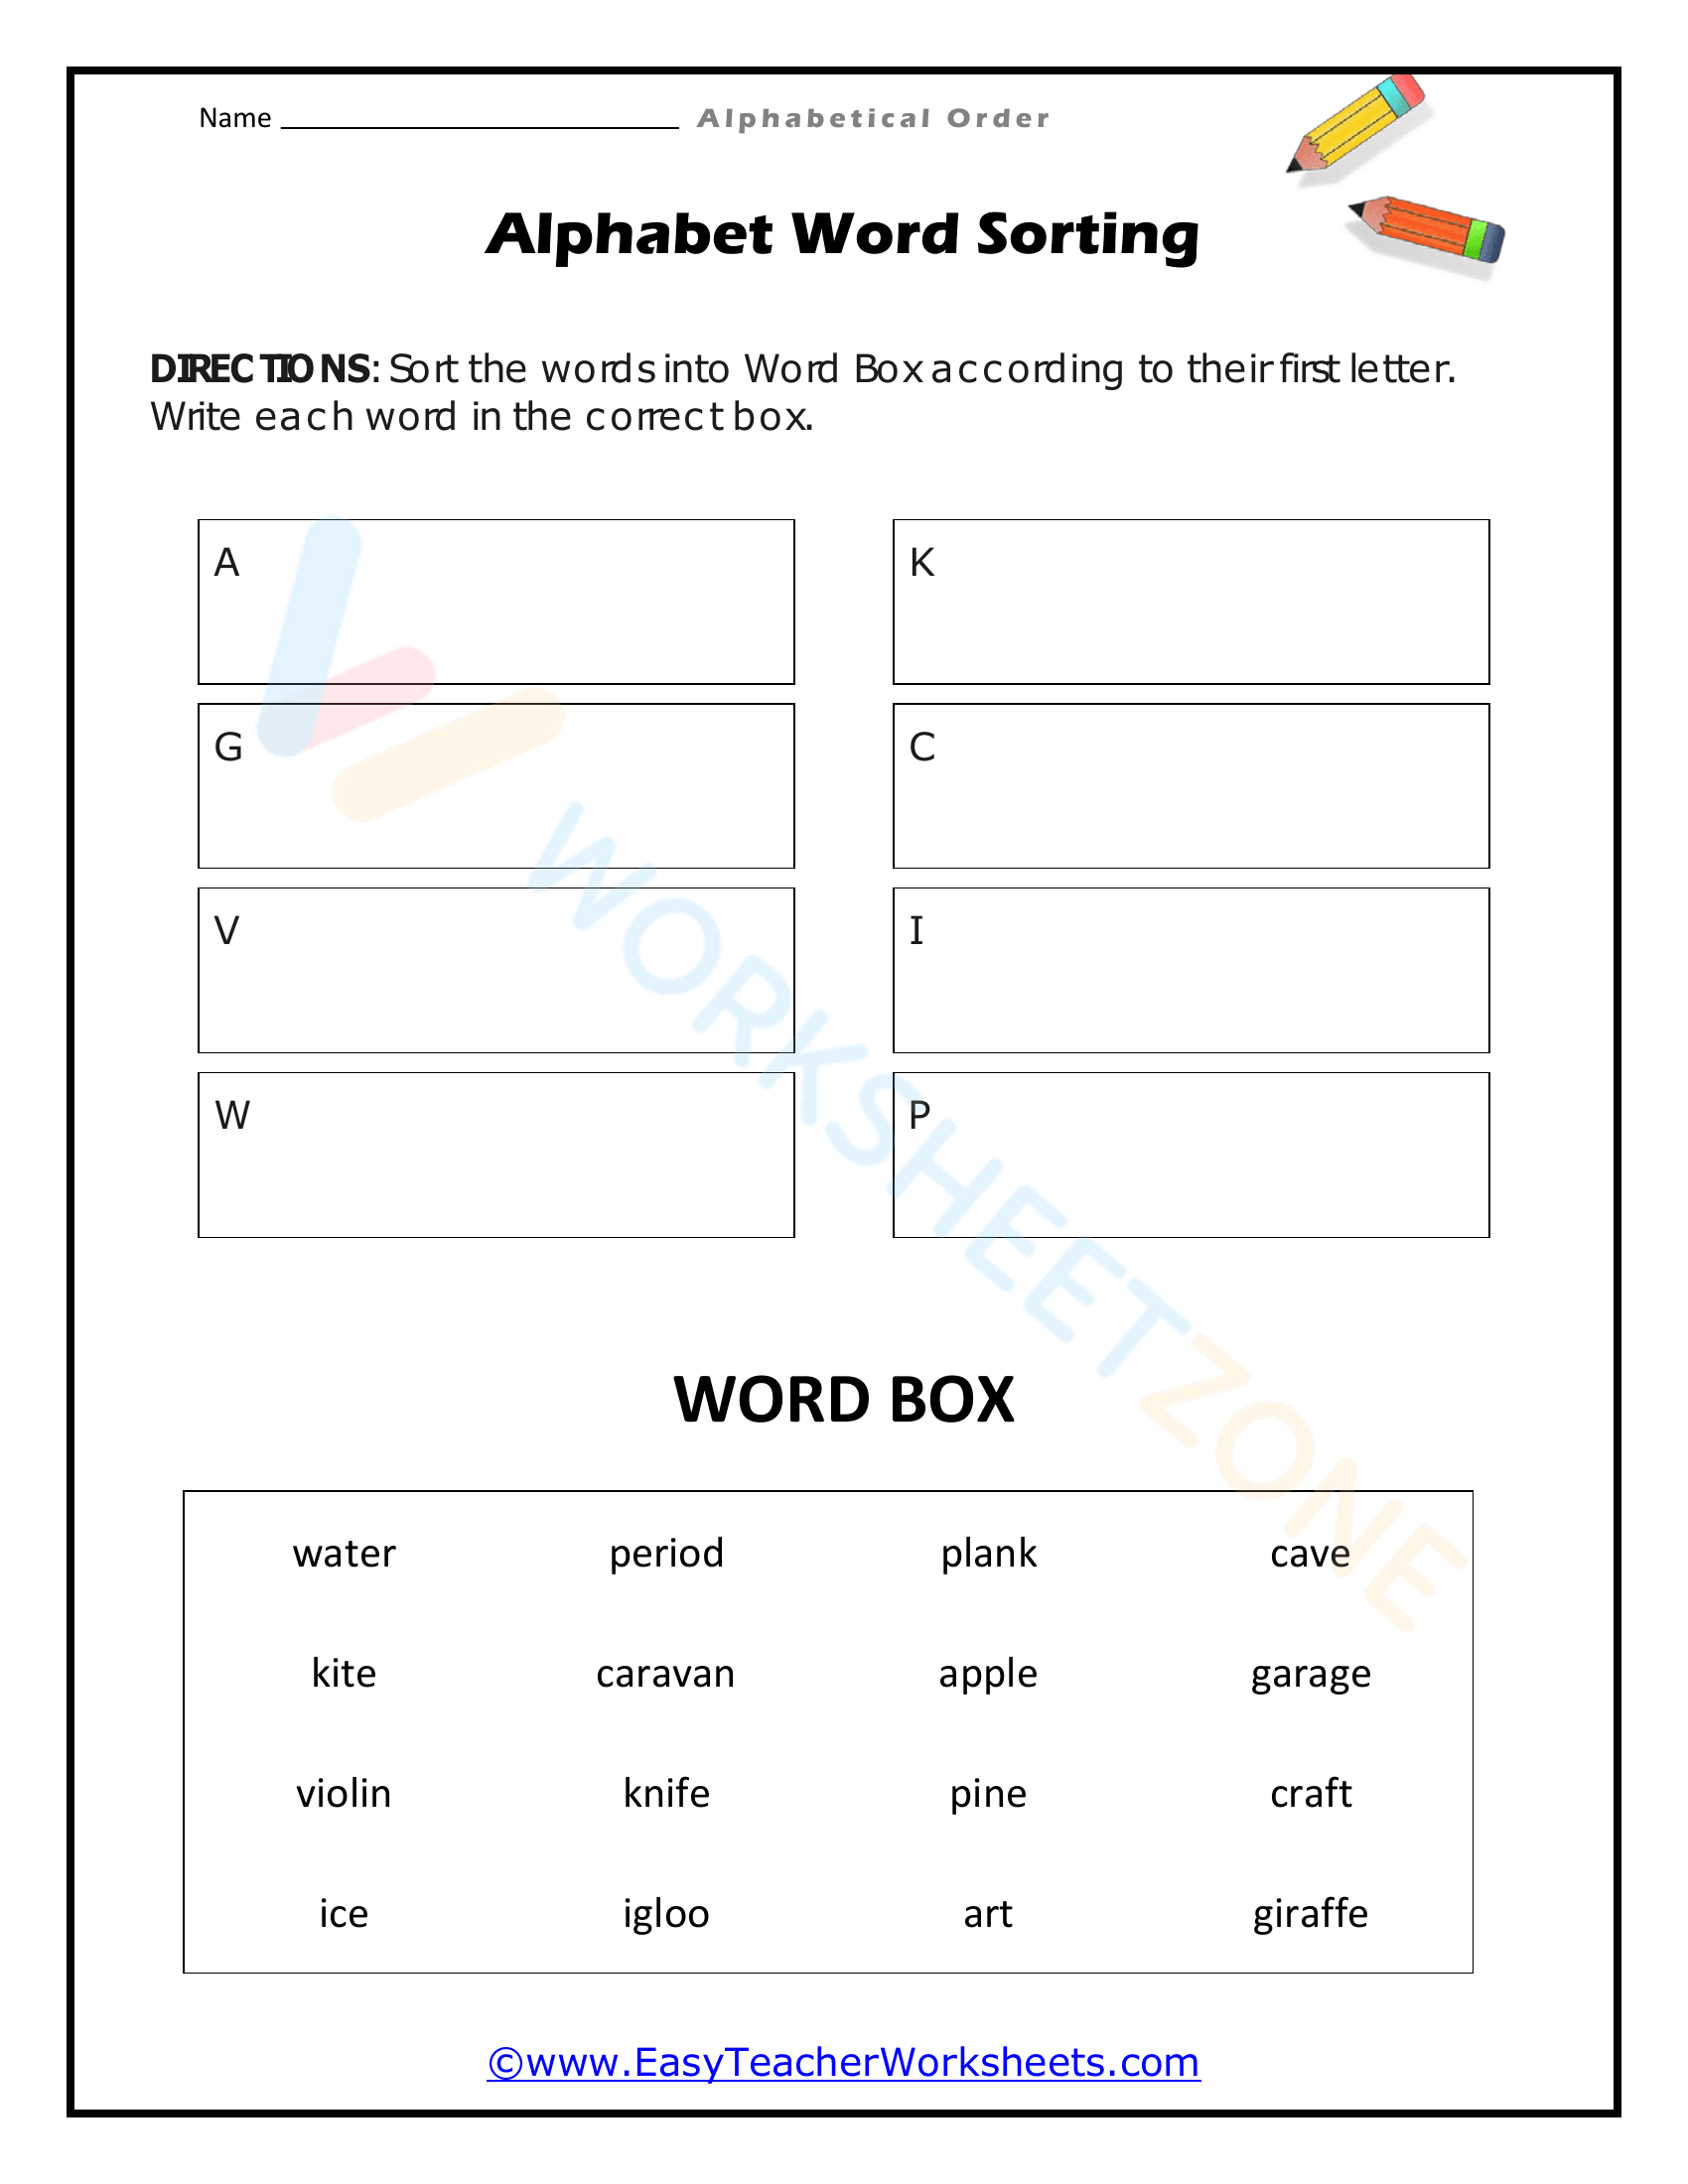 alphabetical order worksheets 10